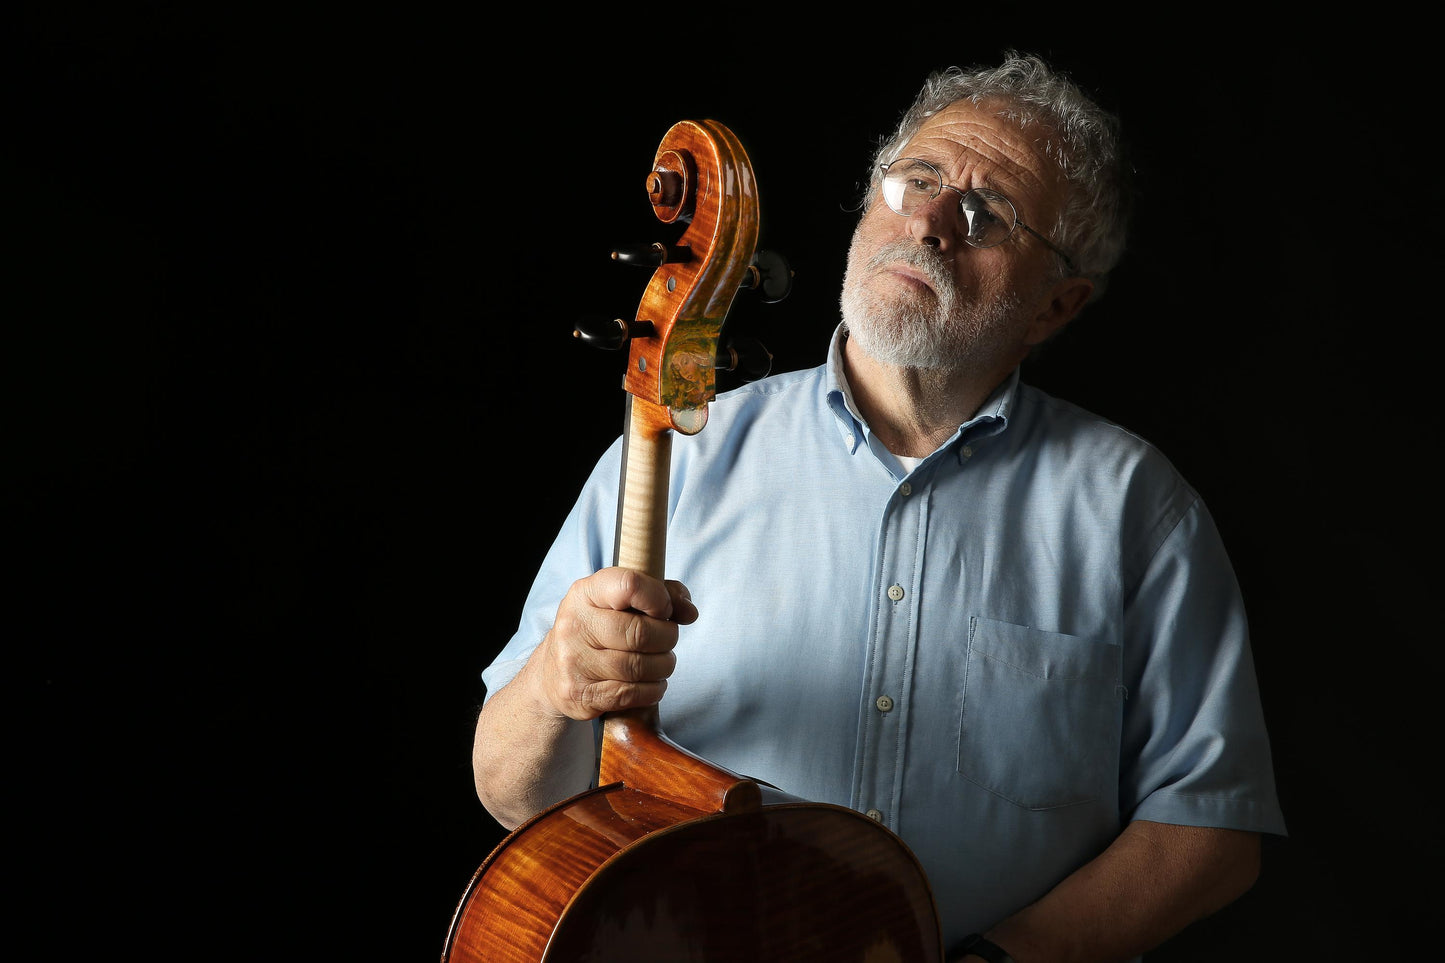 Vettori Paolo Cello Mod. Strad Piatti Rosemary 2016